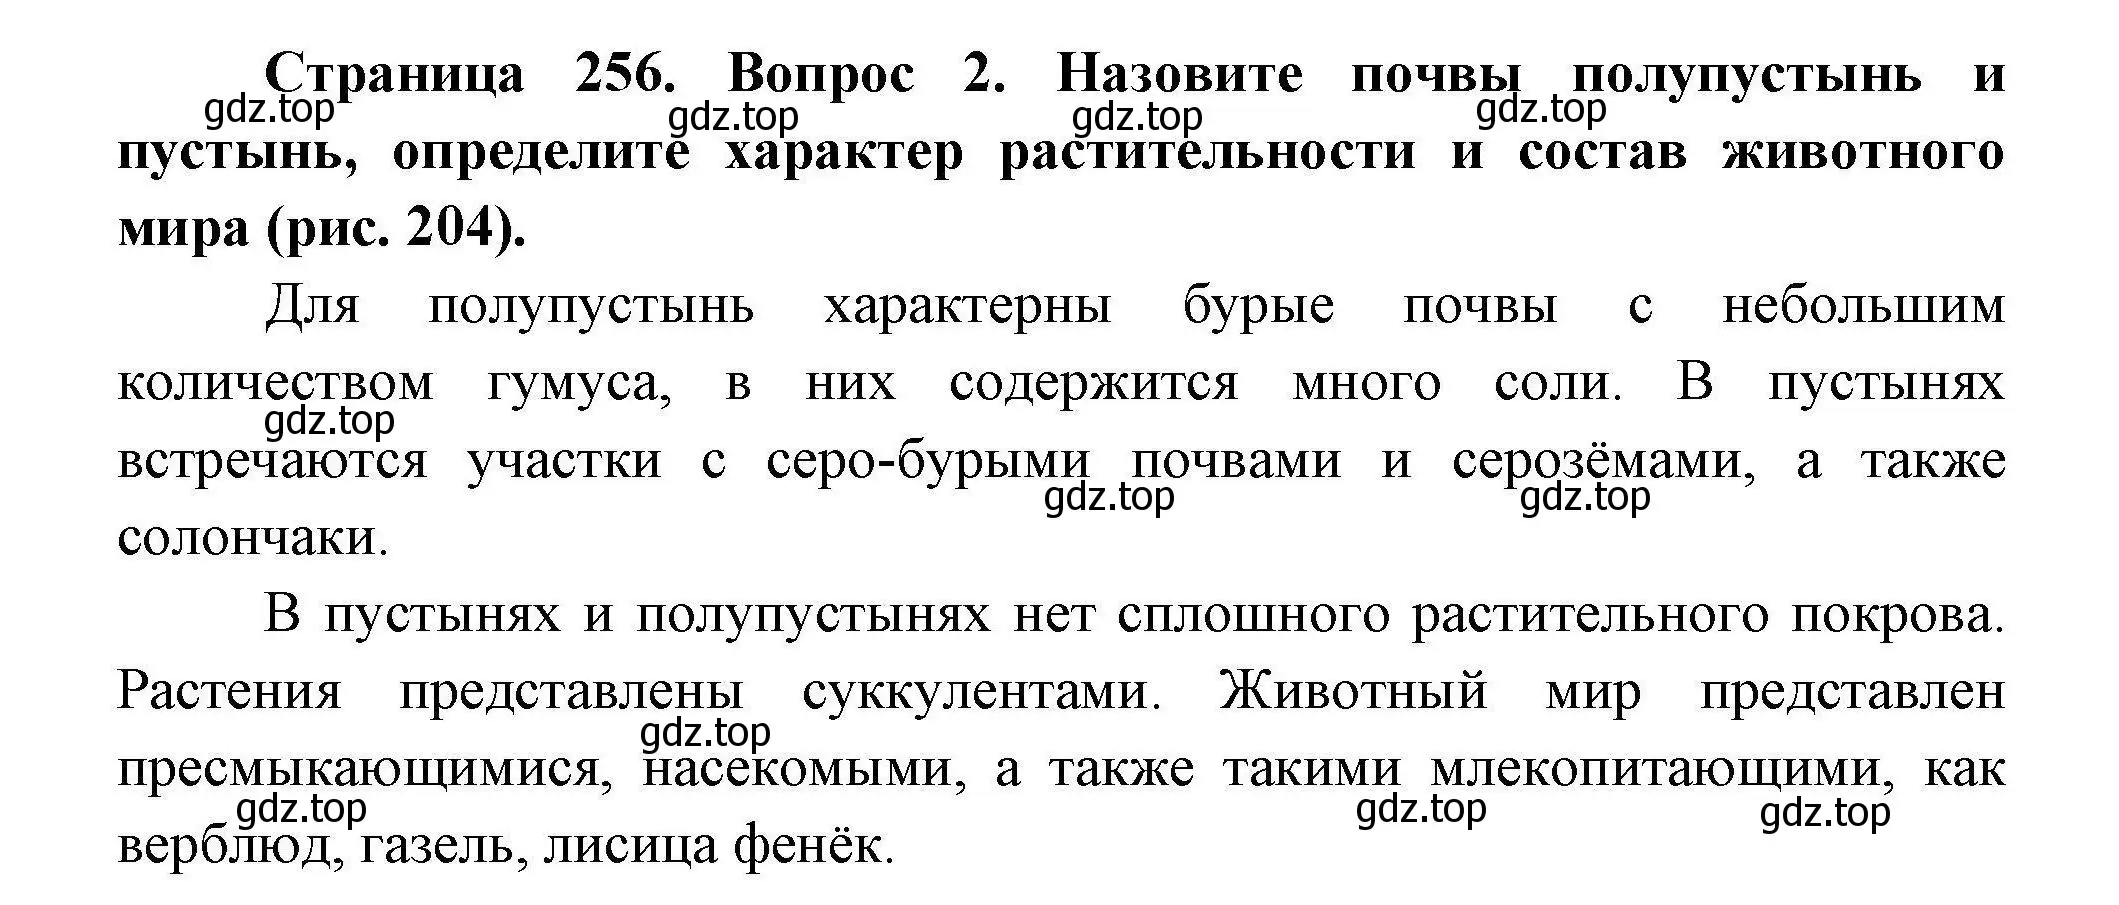 Решение  ☆(2) (страница 256) гдз по географии 7 класс Коринская, Душина, учебник